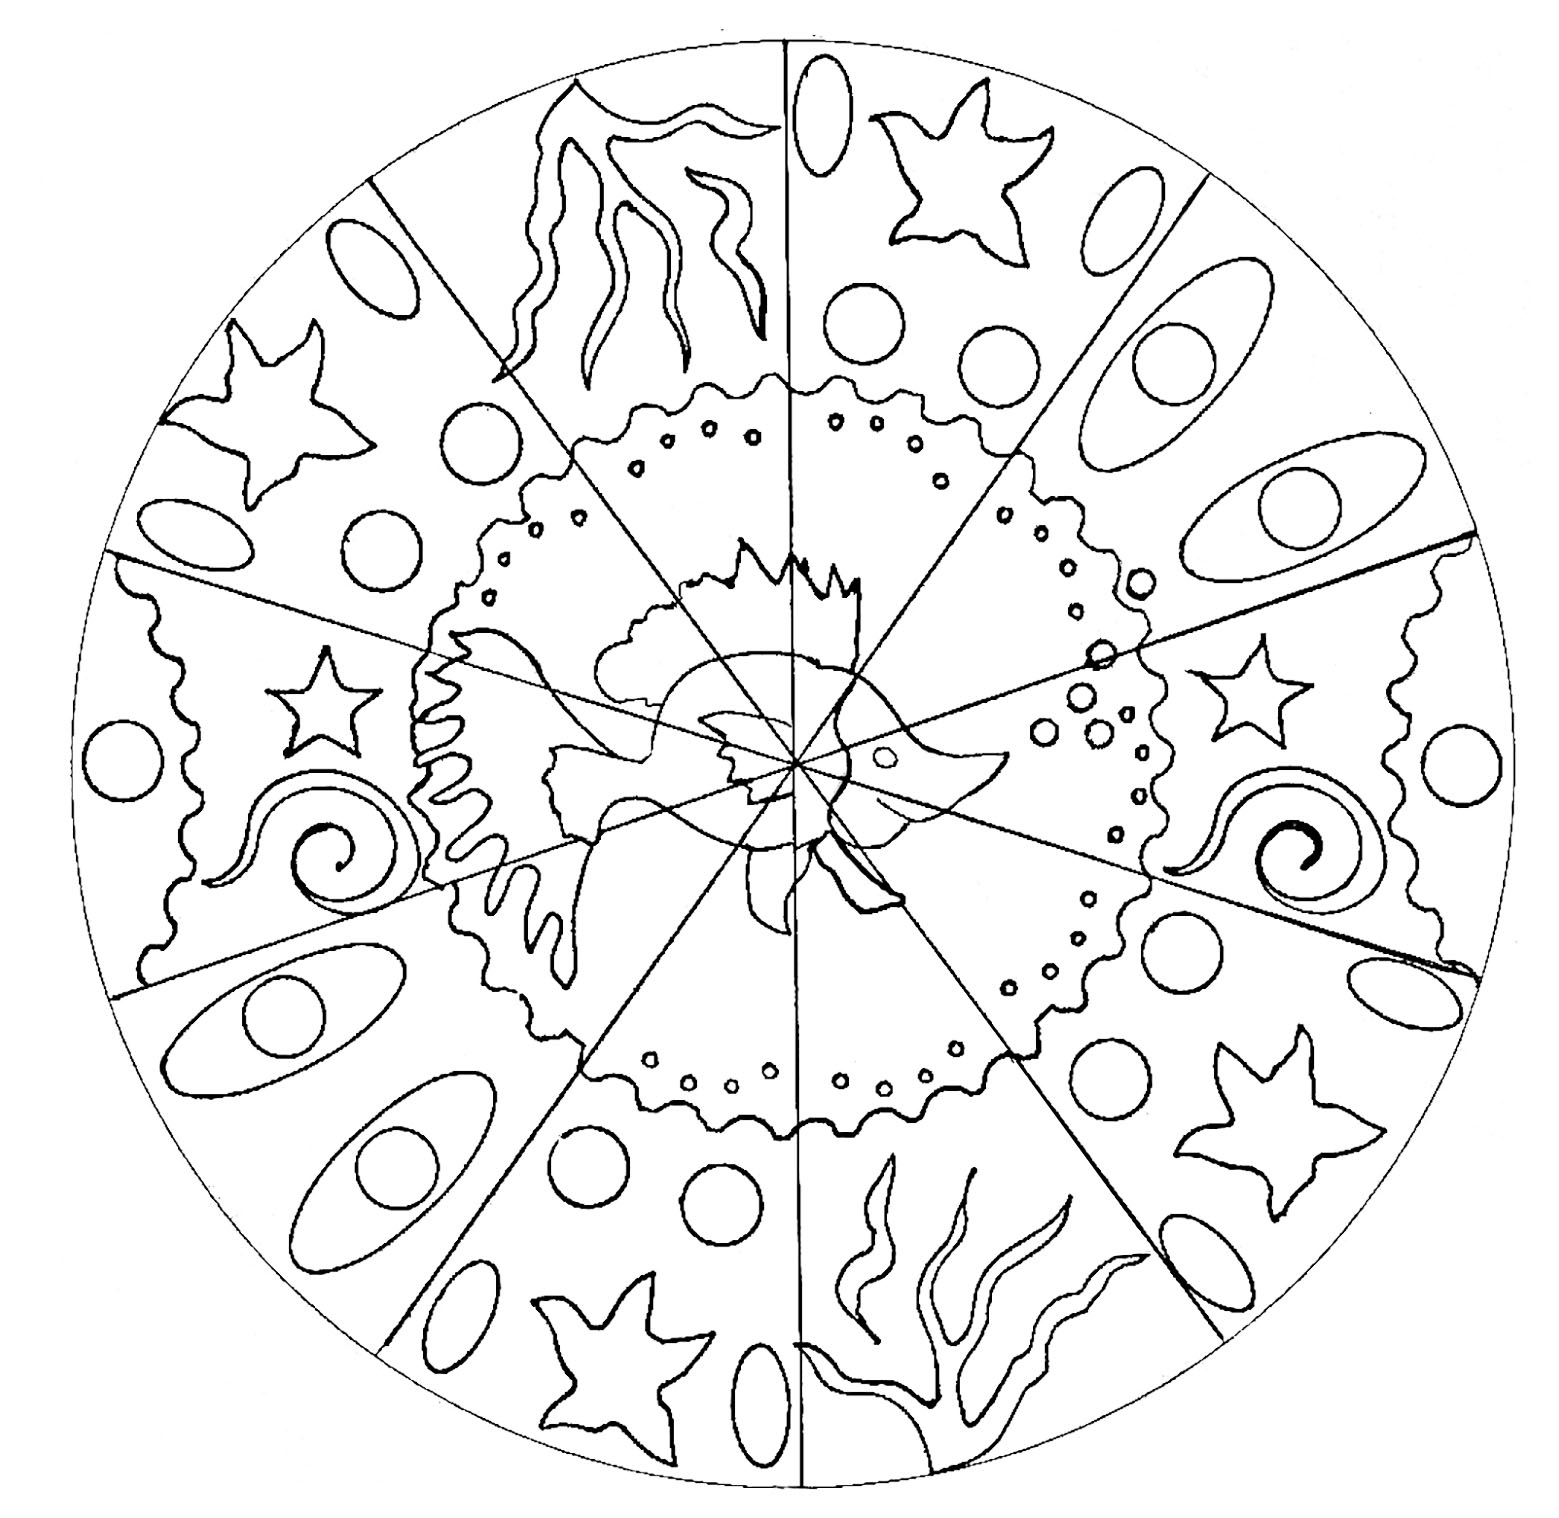 Un Mandala da colorare per i bambini più piccoli, a basso livello di difficoltà. Al centro c'è un bel pesce